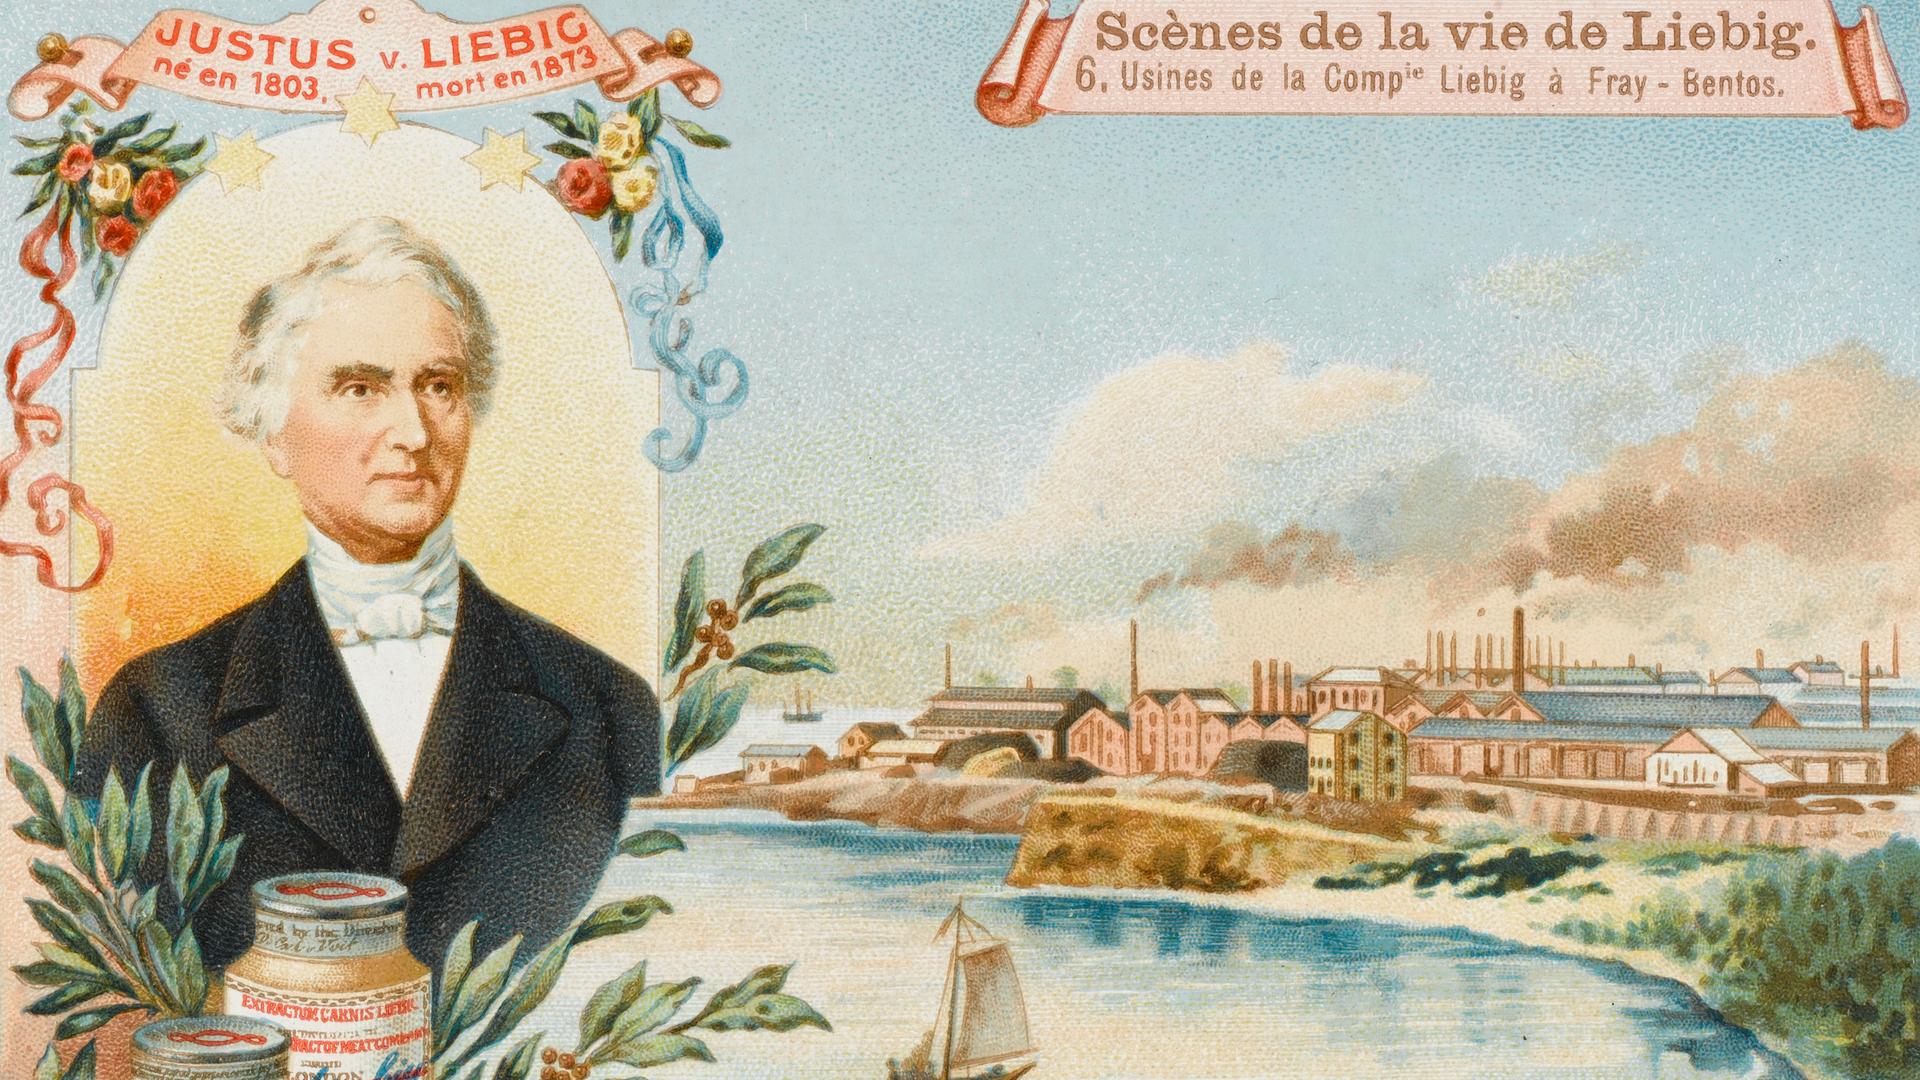 Die undatierte Postkarte zeigt Justus von Liebig porträtiert neben seiner Fleischbrühe-Hauptbetriebsstätte in Fray Bentos in Uruguay.